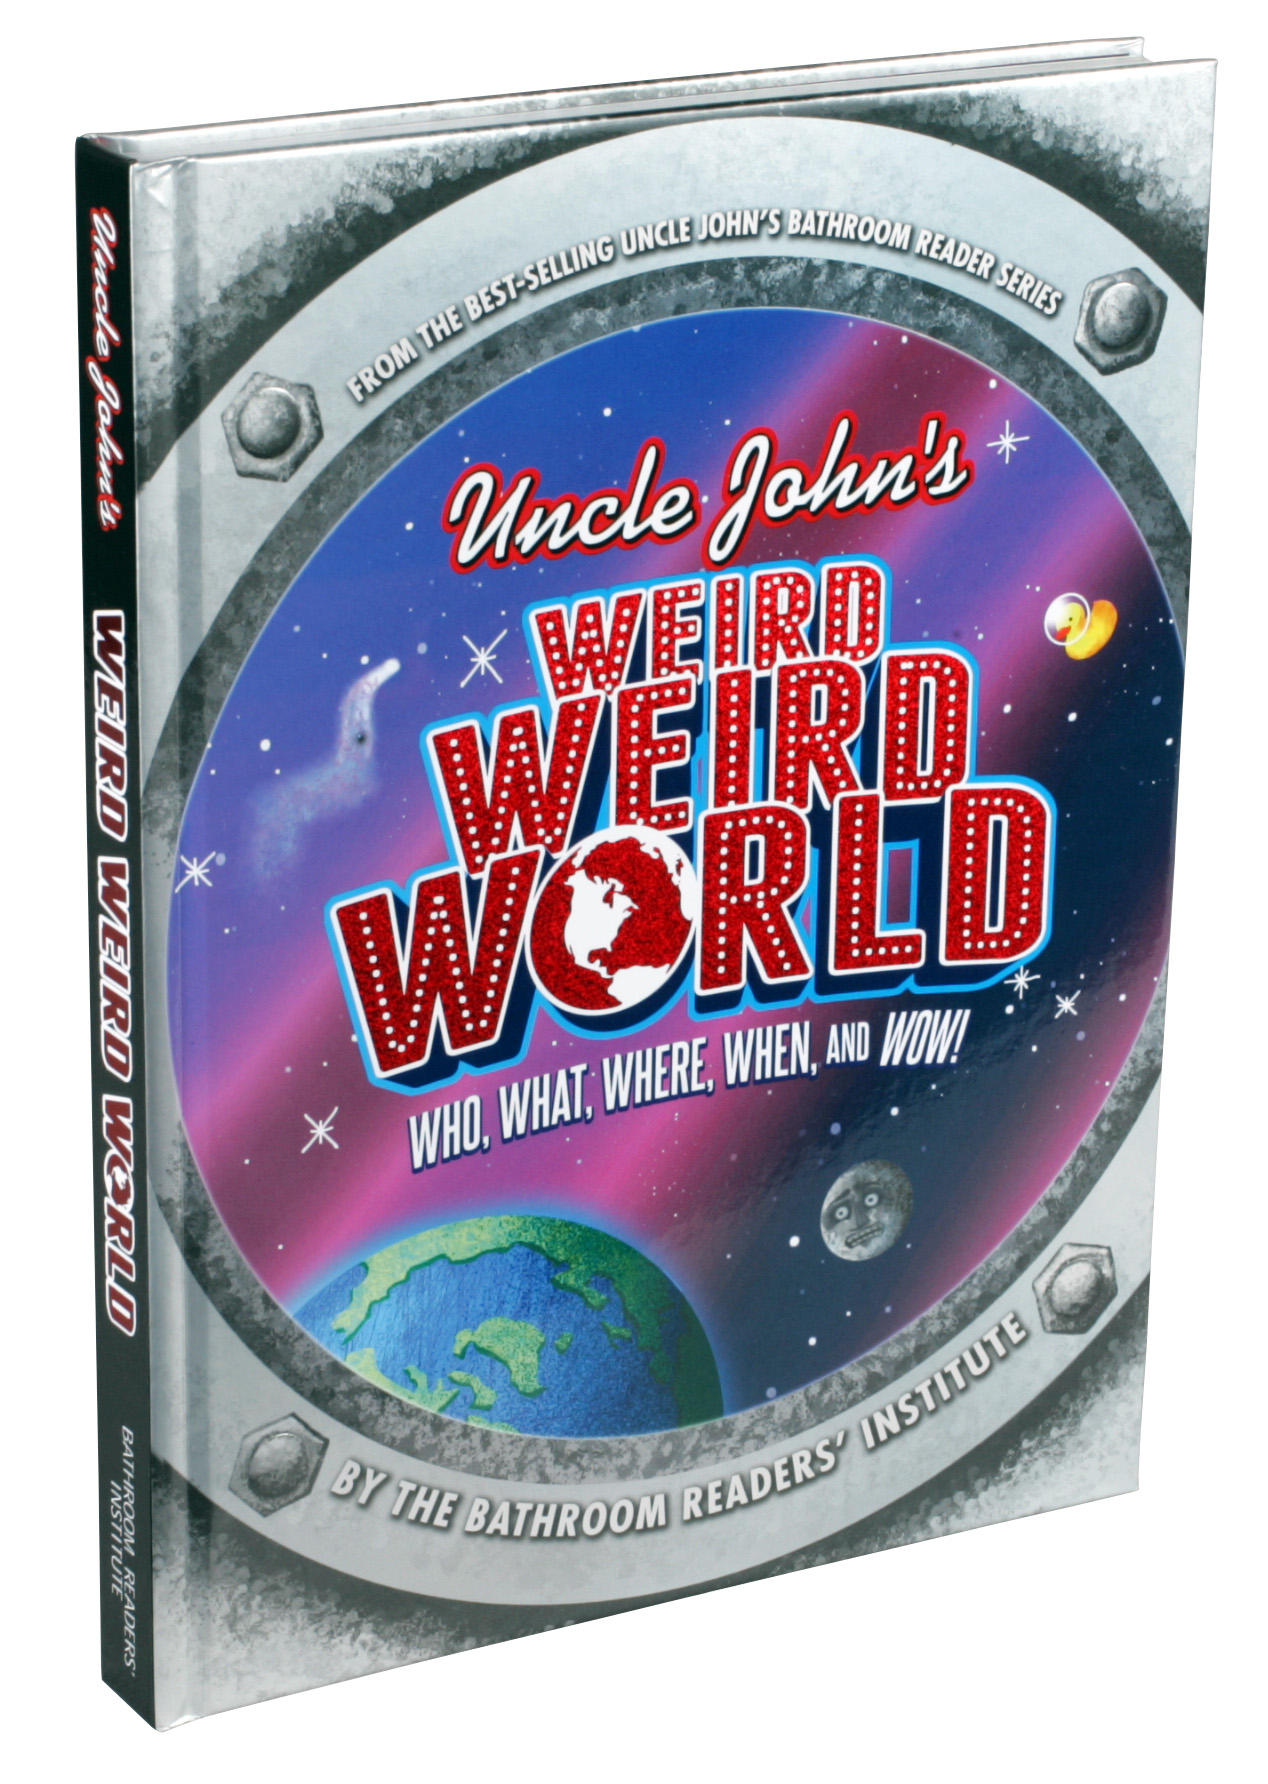 Uncle John's Weird Weird World